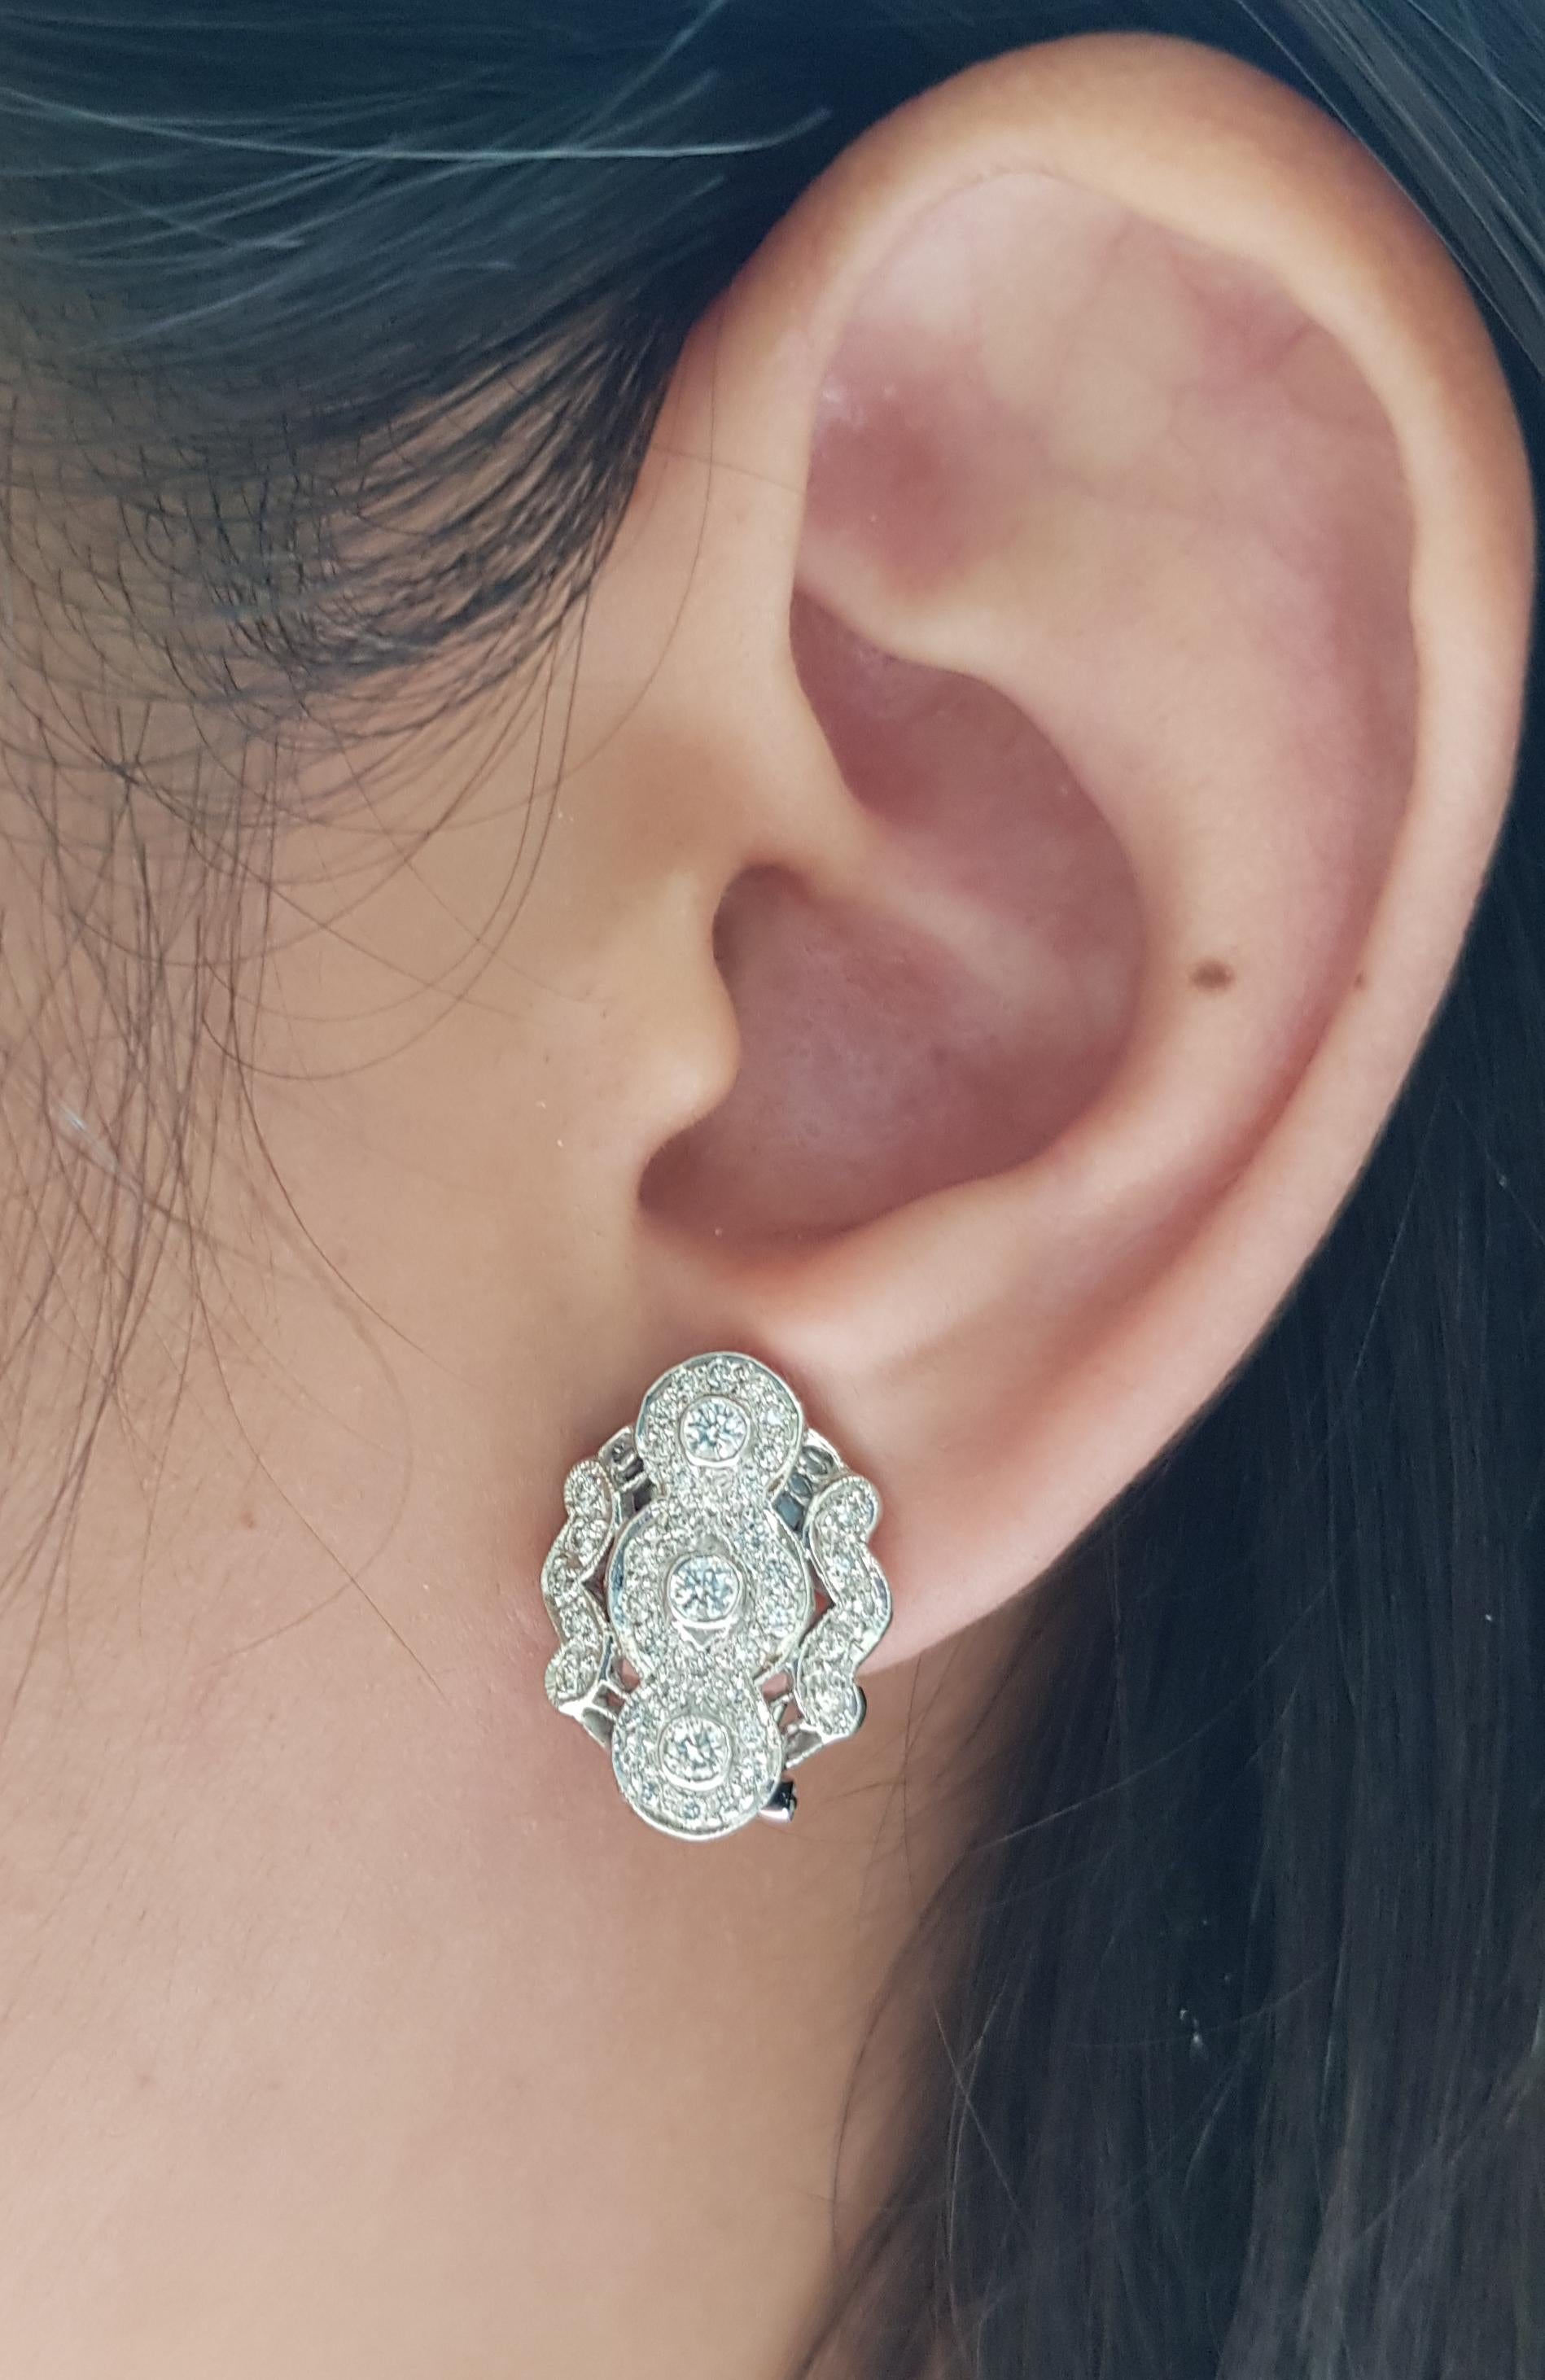 Boucles d'oreilles en diamant de 1,14 carats serties dans un cadre en or blanc 18 carats

Largeur :  1.5 cm 
Longueur : 1,9 cm
Poids total : 10,71 grammes

